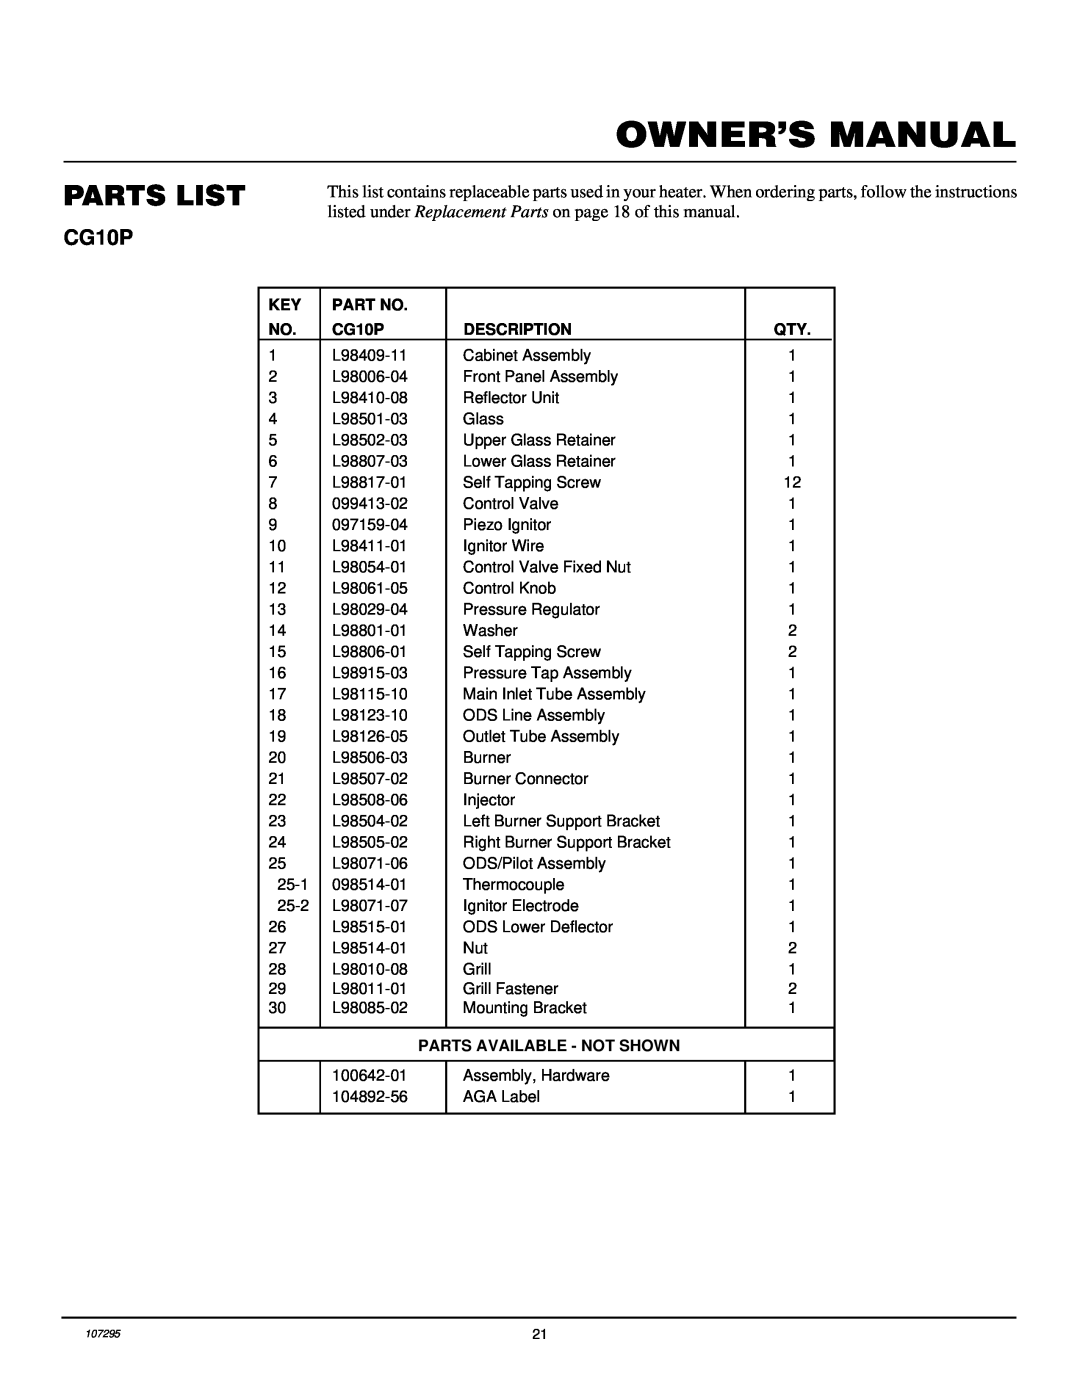 Desa CGS10P, CG6P installation manual Parts List, CG10P, Description, Parts Available - Not Shown 